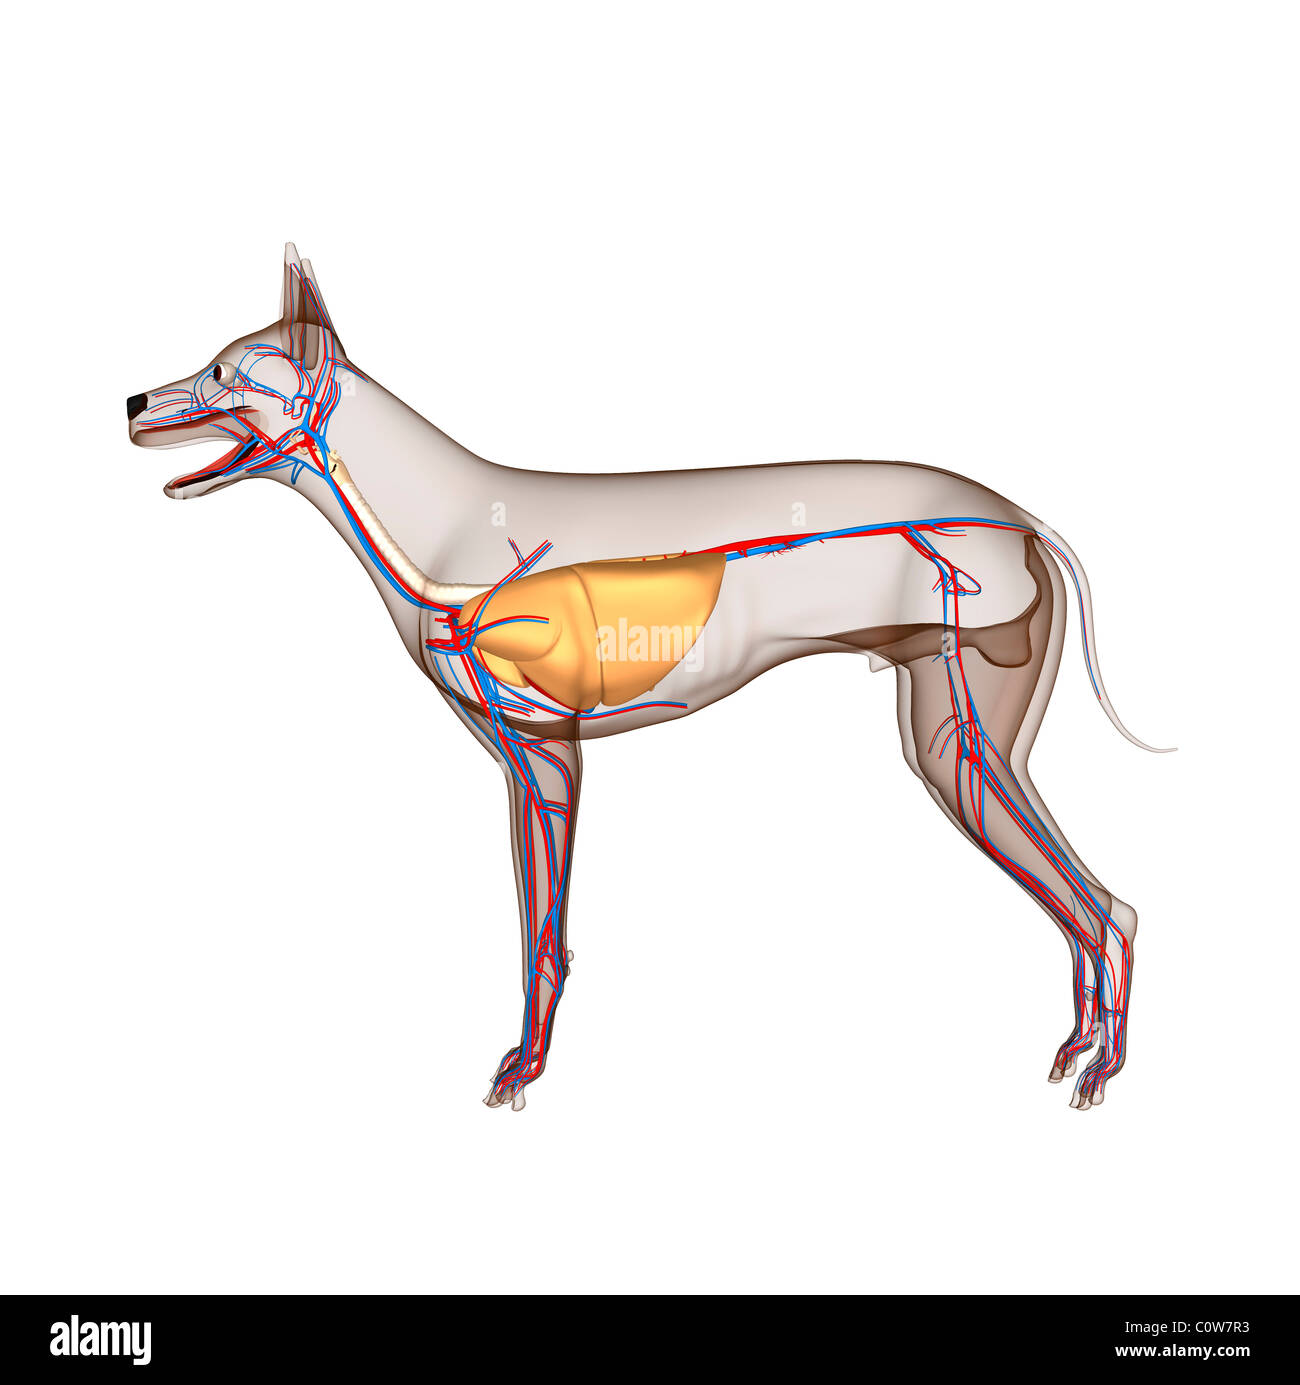 Hund-Anatomie-Herz-Kreislauf mit durchsichtigen Körper Atemwege  Stockfotografie - Alamy